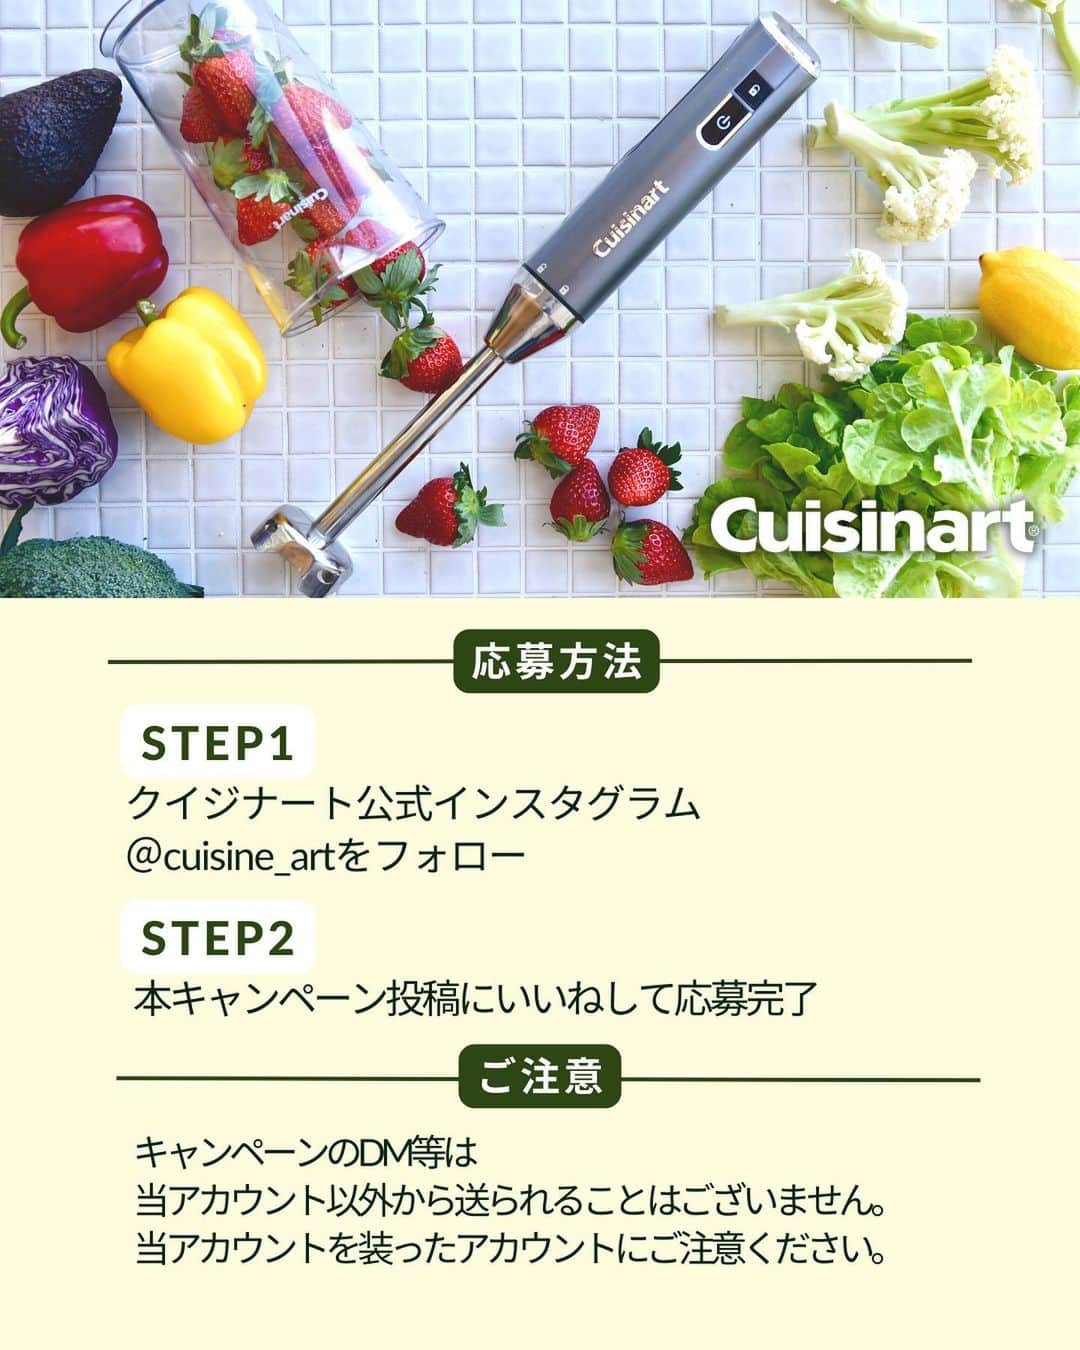 Cuisinart(クイジナート)ジャパン公式アカウントさんのインスタグラム写真 - (Cuisinart(クイジナート)ジャパン公式アカウントInstagram)「＼ 新生活応援📣／プレゼントキャンペーン第二段🎁  4月から新しい一歩を踏み出された皆さま、またそんな方を応援されている皆さまへ📣  3月に続き、クイジナートでは新生活をより楽しく彩るアイテムをプレゼントする「新生活応援キャンペーン」を実施いたします！  第二弾となる4月は　クイジナート コードレス充電式ハンドブレンダー　を3名様にプレゼント✨ コードがないからどこへでも持ち運べる！コードを気にせずお鍋やボウルで手軽に使える！マルチに活躍するハンドブレンダーです。  お鍋で作るスープ、毎日のスムージー、離乳食作りなど、場所を気にせず手軽に使えます。 キッチンの限られたコンセントの数やコードで邪魔になるお鍋の取っ手も、もう気になりません😉！  安定感があり手にフィットするグリップ付きハンドルだから、手の小さい方で方も持ちやすい。 毎日使いたくなるデザインです。 また、本体とブレンダーを分割すれば専用カップにコンパクトに収納することができるのも嬉しいポイント！ ぜひこの機会にご応募ください。 ⁣ ■参加方法⁣ ①本アカウント( @cuisine_art )をフォロー⁣ ②こちらのキャンペーン投稿にいいねして応募完了⁣！ ⁣ ■応募期間⁣ 2023年4月3日(月)～4月19日(水)⁣ ⁣ ■賞品⁣ クイジナート『コードレス充電式ハンドブレンダー』⁣ ⁣ ■当選者数⁣ 3名様⁣ ⁣ ＊ご当選された方にのみ、InstagramのDMにて2023年4月下旬〜5月上旬頃にご連絡させていただきます。DMを受け取れる設定への変更をお願いいたします。⁣ ⁣ ※お知らせ※⁣ 最近なりすましアカウントによるフォローや、DMでの偽の当選連絡等が多発しております。⁣ 本キャンペーン期間中において、当アカウントからフォローしたり、⁣ DMをお送りすることはございませんので、なりすましアカウントにはくれぐれもご注意ください。⁣ ⁣ 《ご注意》⁣ ＊応募はおひとりさま1回限りとなります。⁣ ＊すでに対象の公式Instagramアカウントをフォローされている方も応募対象となります。⁣ ＊やむを得ない事情などにより、賞品の発送時期は変更となる場合がございます。⁣ ＊同一の応募者さまから複数アカウントを使用しての応募を確認した場合、1アカウントの応募のみを有効とみなし、それ以外の応募は無効といたします。⁣ ＊抽選時に、アカウントフォロー等、当選要件となる状態を維持いただいていることが確認できない場合、抽選の対象から外れることがあります。 ＊本キャンペーンは予告なく中止または変更させていただく場合がございます。⁣ ＊本キャンペーンにご参加いただくことにより、本募集要項に同意いただいたものとみなします。（未成年者の方は、親権者に同意いただいたものとみなします）⁣ ＊当社の社員とその家族、及び関係者の応募はできません。⁣ ＊日本国外にお住まいの方に対しては、当選しても賞品を配送できません。国内にお住まいのフォロワー様限定のキャンペーンです。⁣ ＊アカウントを非公開設定にしている場合は抽選対象外となります。⁣ ＊下記に当てはまる場合、ご当選の資格は無効となります。⁣ ・応募に際し、不正行為があったと当社が判断した場合⁣ ・通信環境の良くない状態にありDMが不着となった場合⁣ ・ご当選通知のDMに対し返信期限までに手続きを履行いただけない場合⁣ ・登録内容に不備があった場合⁣ ・住所/転居先不明または長期不在などにより、賞品がお届けできなかった場合⁣ ＊賞品の返品・交換・配送業者より弊社に返品されてからの再配送はできませんのでご了承くださいませ。⁣ ＊賞品の転売は固くお断りいたします。⁣ ＊賞品の発送は2023年5月中旬〜頃を予定しておりますが、諸事情により前後する場合がございます。予めご了承ください。⁣ ＊本キャンペーン参加にあたって生じるインターネット接続料や通信料、ご当選通知メールに記載の手続を履践するにあたって生じる諸費用は、ご本人様の負担となります。⁣ ＊応募受付の確認・抽選方法・当選・落選等についてのご質問、お問い合わせは受け付けておりません。⁠⁣ ＊賞品発送後の賞品による損害等の責任については、弊社は一切負いかねます。予めご了承ください。⁣ .⁣ .⁣ #クイジナート #cuisinart #クイジナートのある生活 #クイジナートLOVE #クイジナートハンドブレンダー #ハンドブレンダー #コードレス充電式ハンドブレンダー #コードレスブレンダー #充電式ブレンダー #便利家電 #時短家電 #時短調理家電 #時短 #キッチン家電 #ブレンダーのある生活  #コードレス家電 #新生活 #新生活応援 #プレゼント #プレゼント企画 #プレゼント企画開催中 #プレゼント企画実施中 #プレゼントキャンペーン実施中 #キャンペーン実施中 #プレゼントキャンペーン #離乳食準備 #離乳食初期 #離乳食スタート #離乳食ストック作り #手作りスムージー」4月3日 11時00分 - cuisine_art